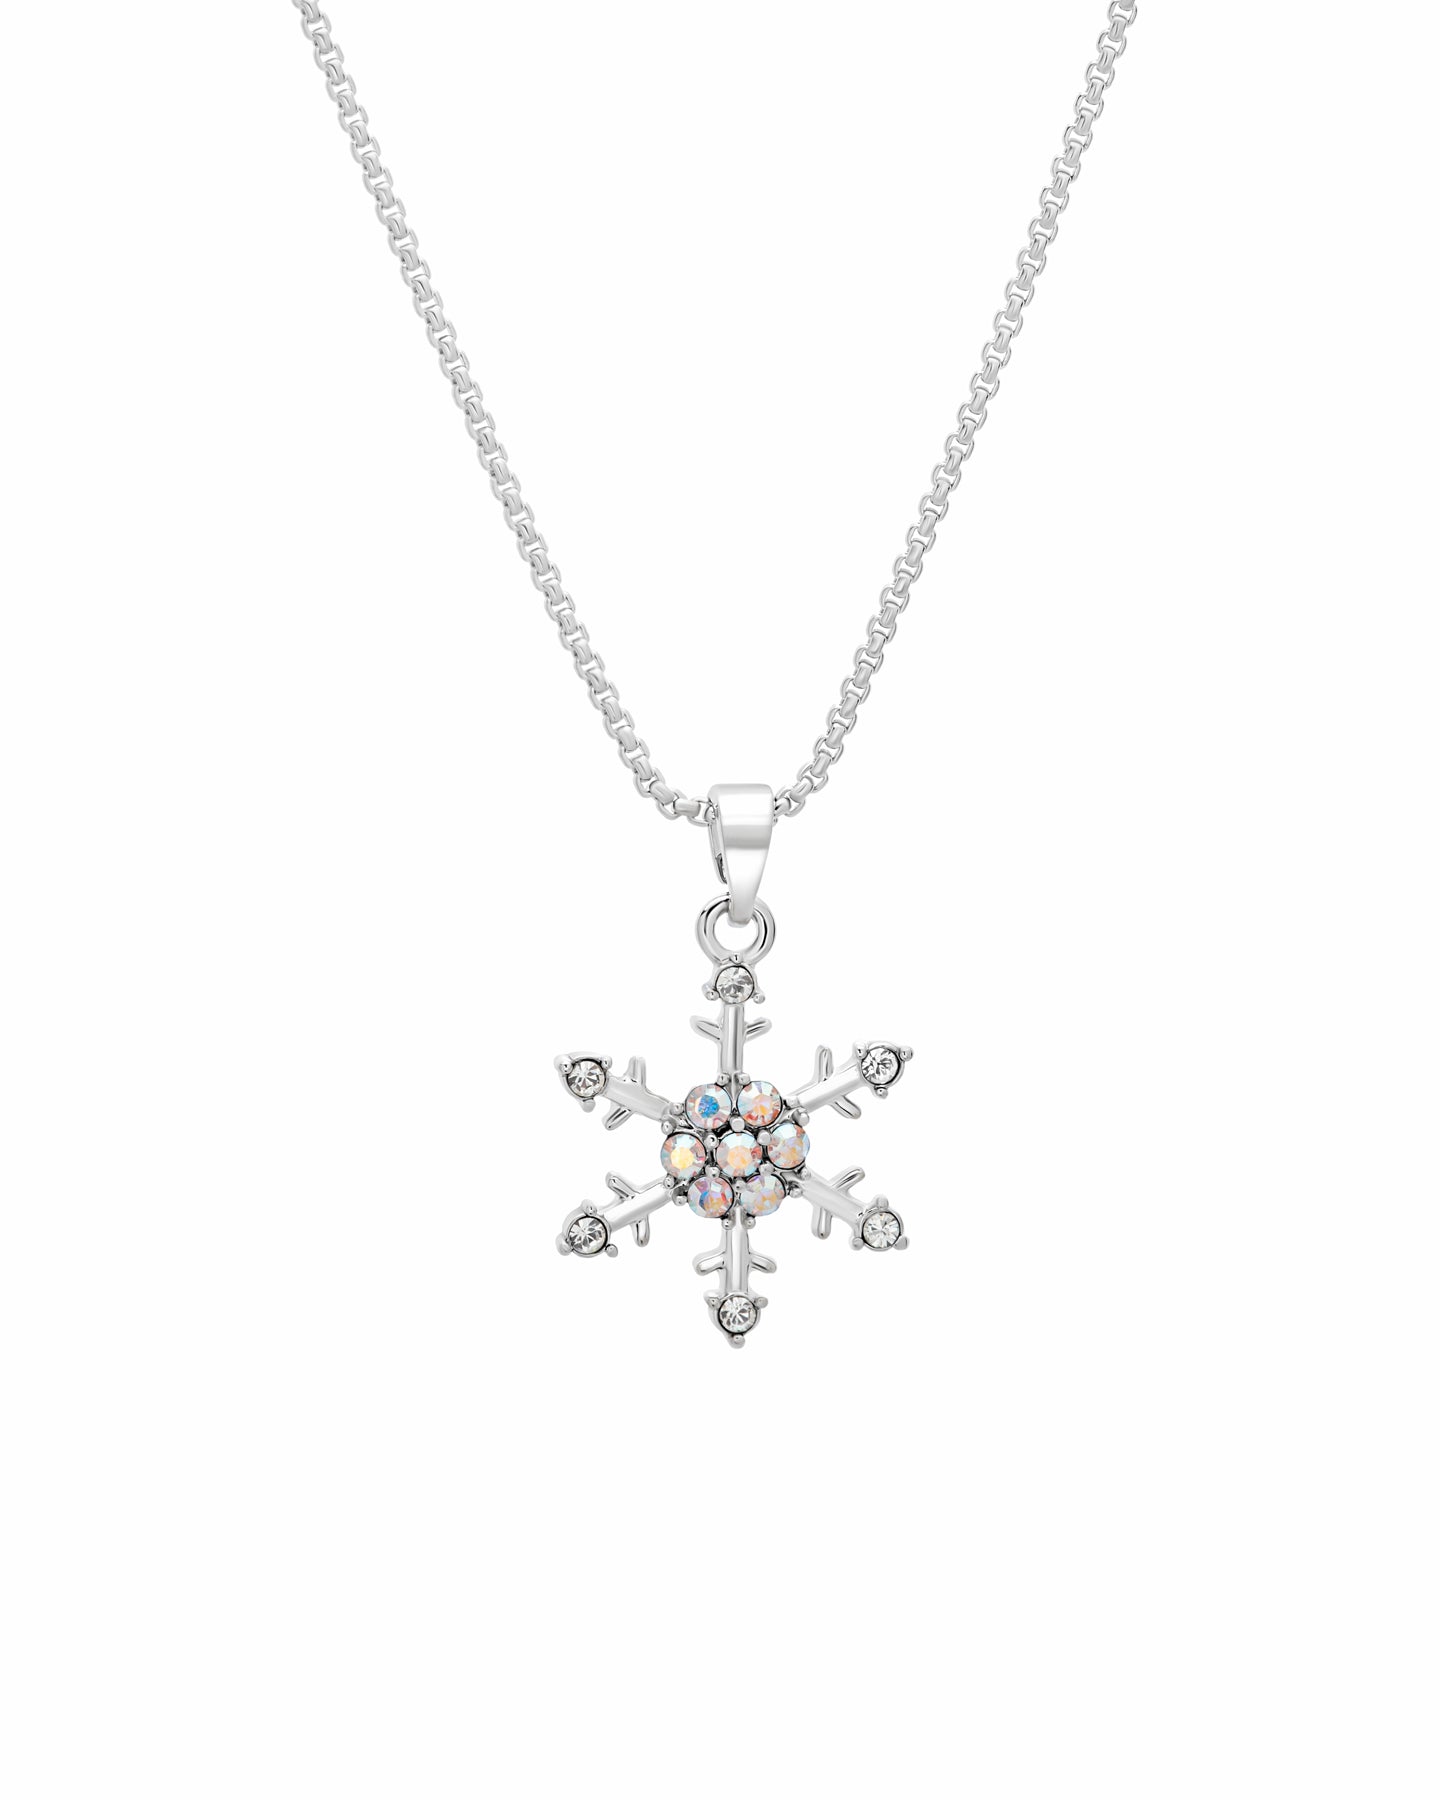 Aurora Borealis Swarovski Crystal Snowflake Pendant Necklace